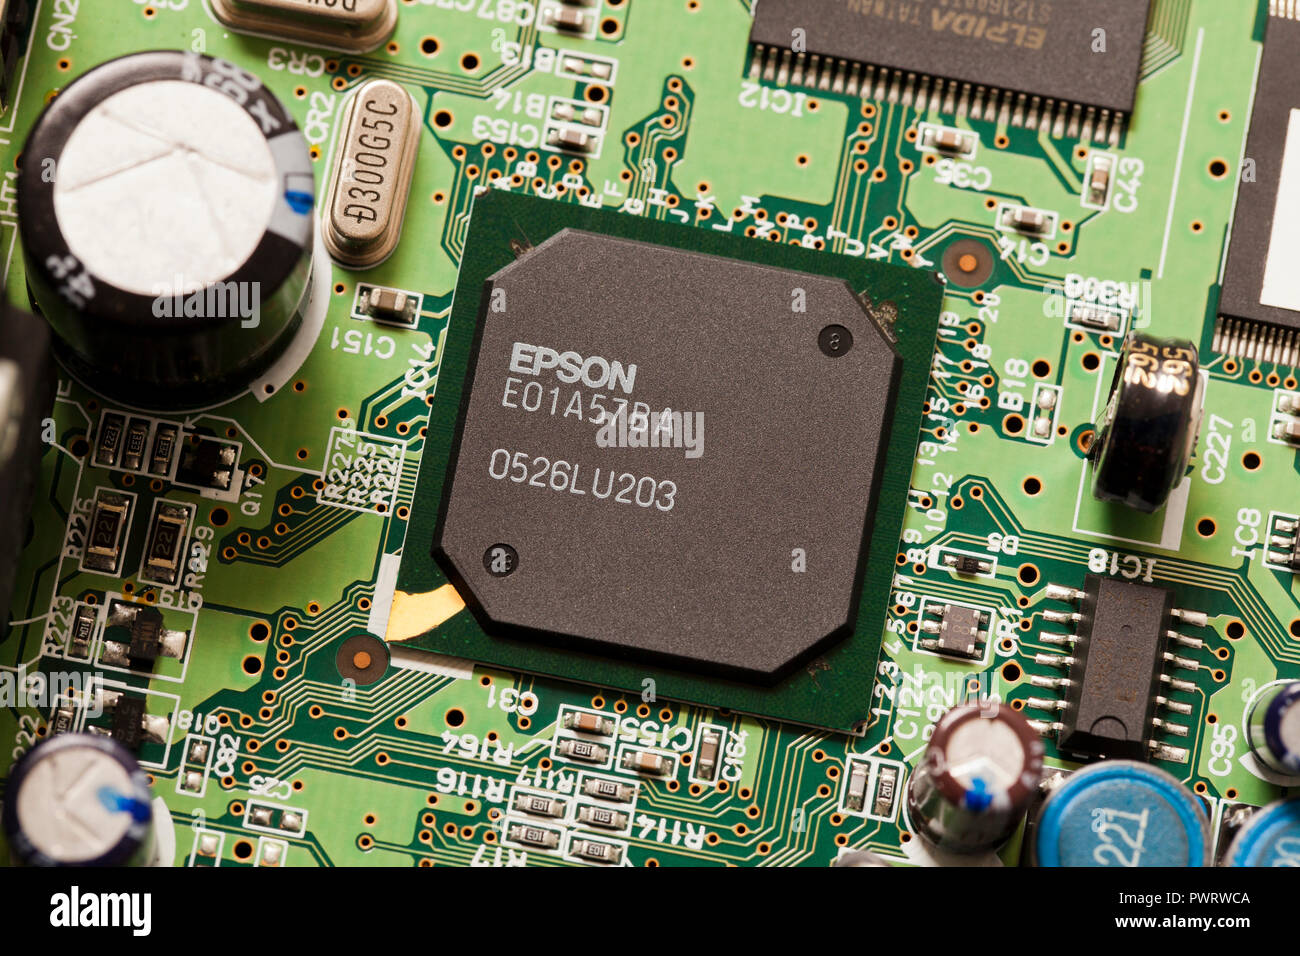 Circuit de l'imprimante Epson sur cpu board - USA Banque D'Images